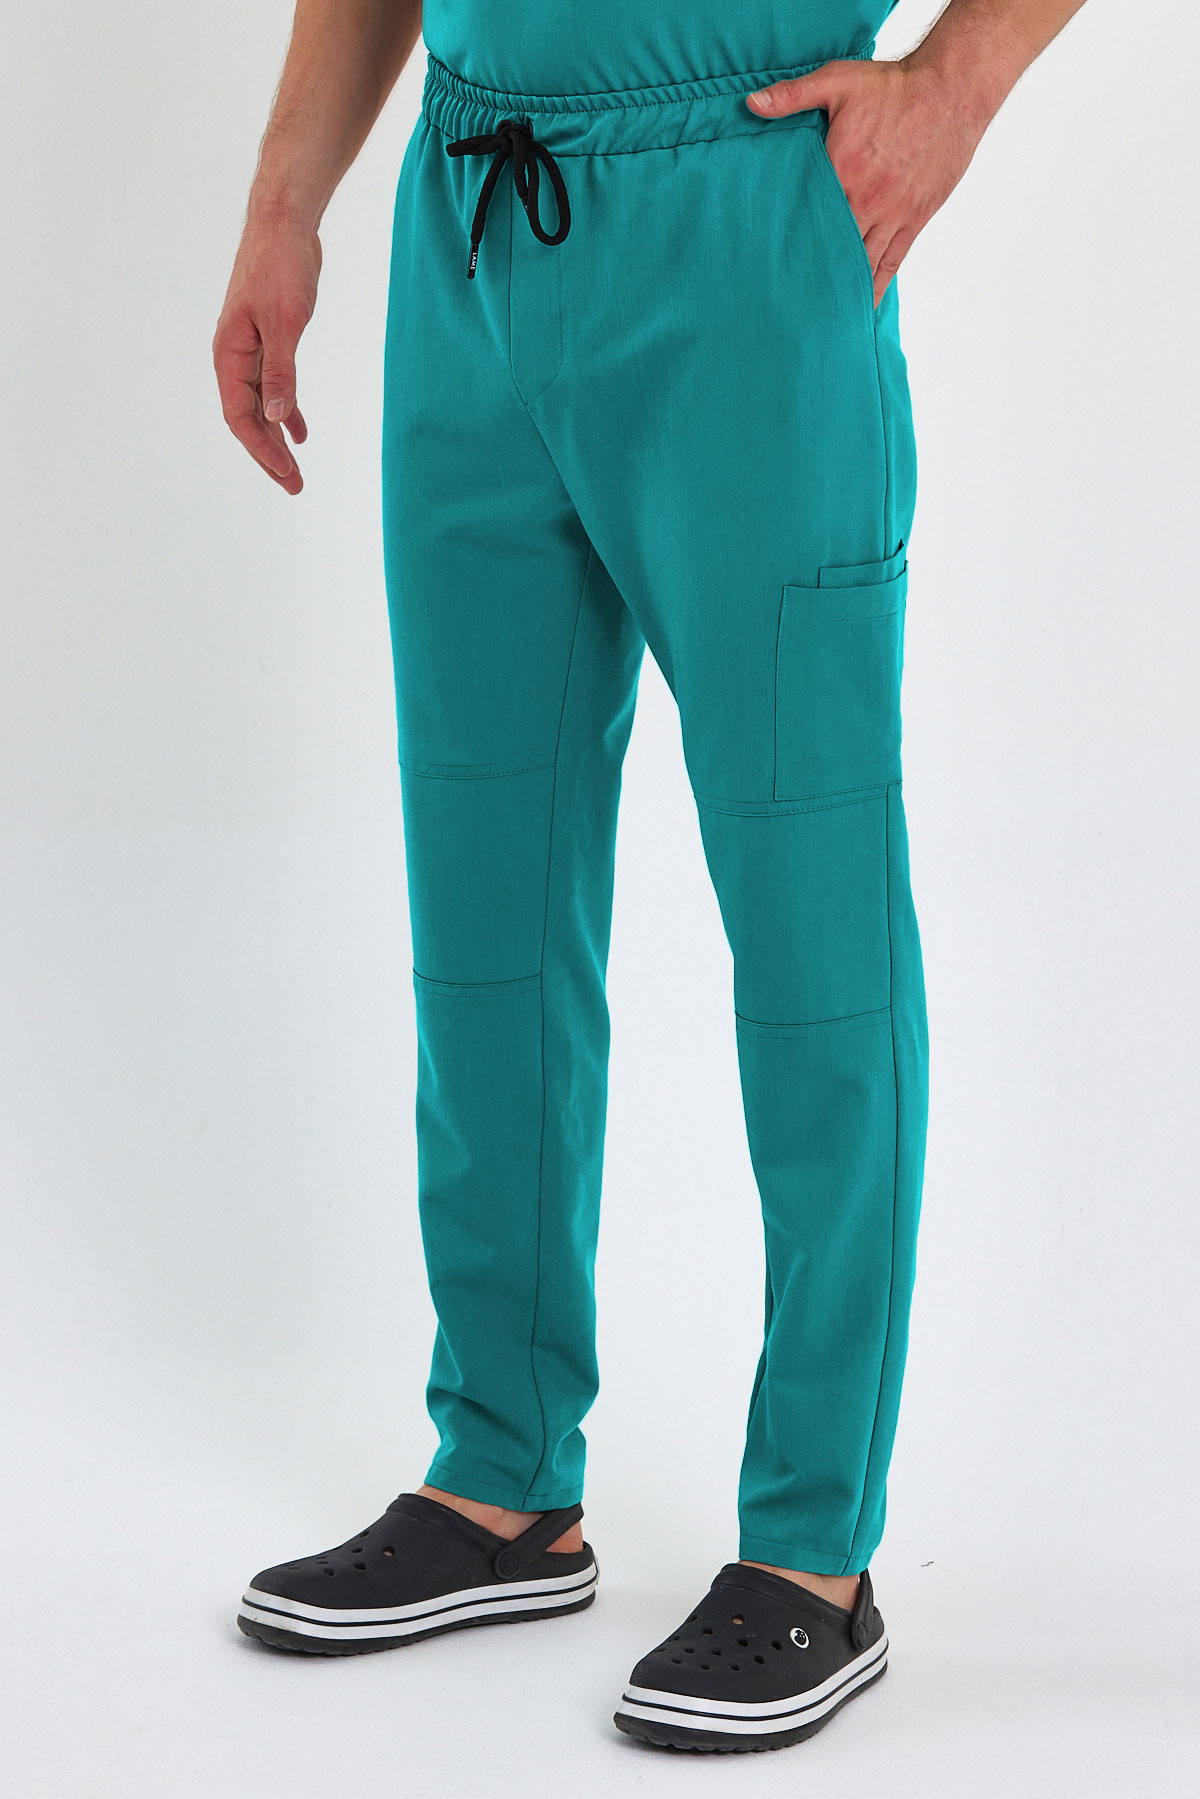 LAME 3004 Luxury Likralı Cerrahi Yeşil Scrubs, Hemşire Forması Diz Ekli Kargo Cepli Pantolon